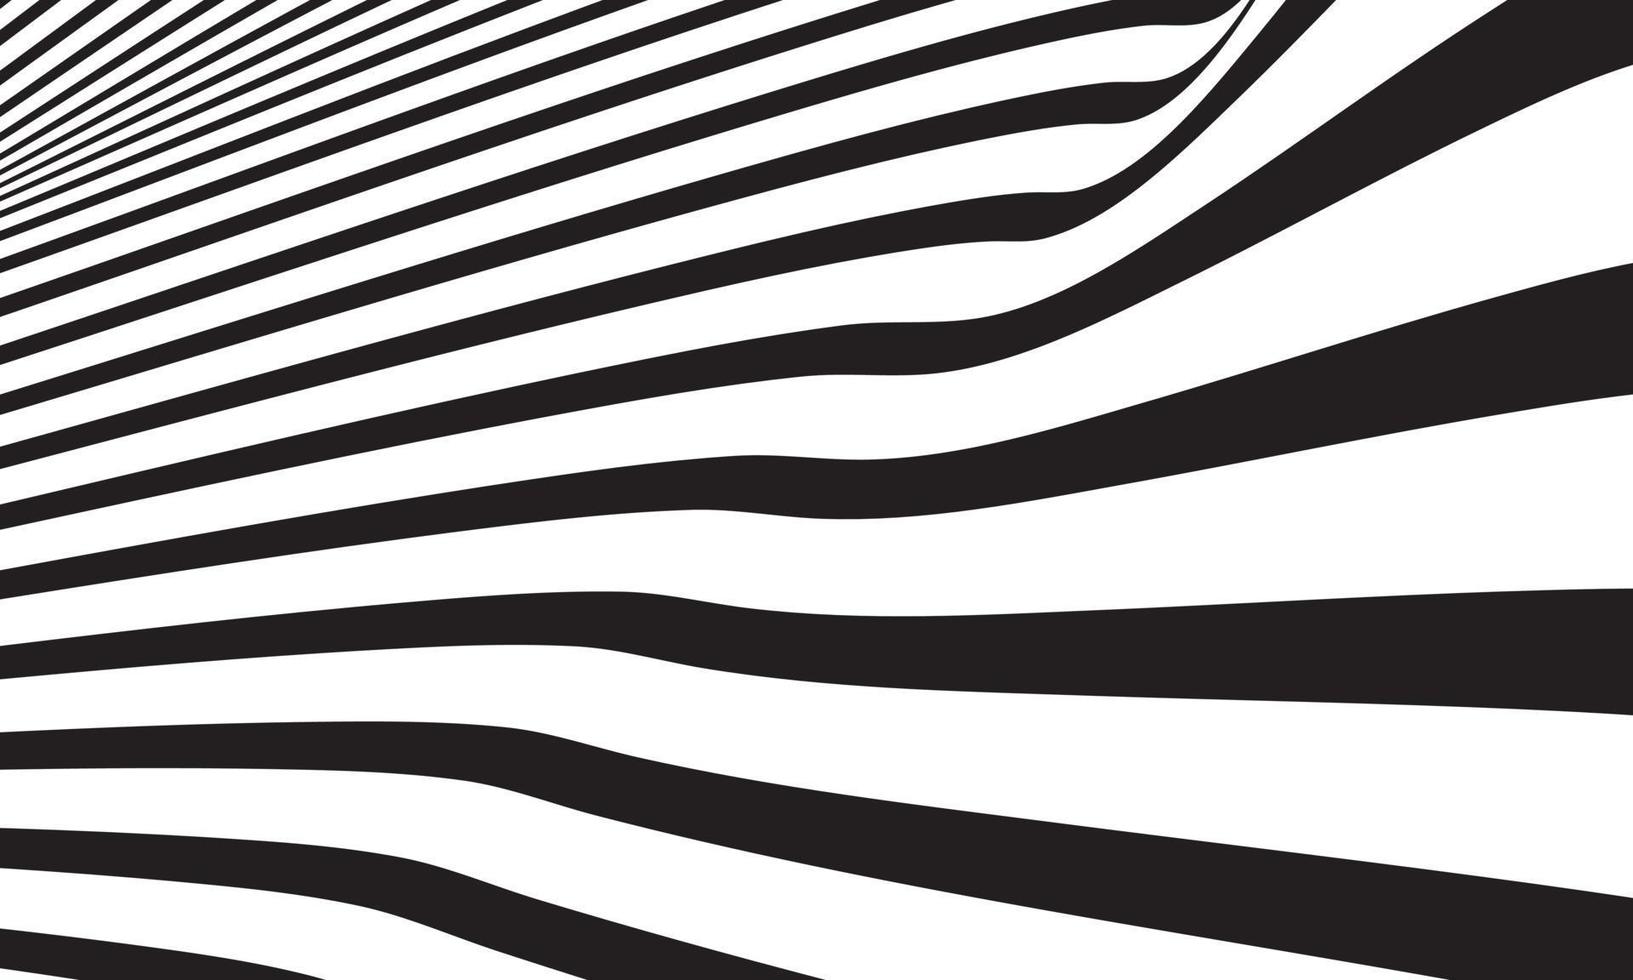 abstrakt randig bakgrund i svart och vitt med vågiga linjer mönster. vektor